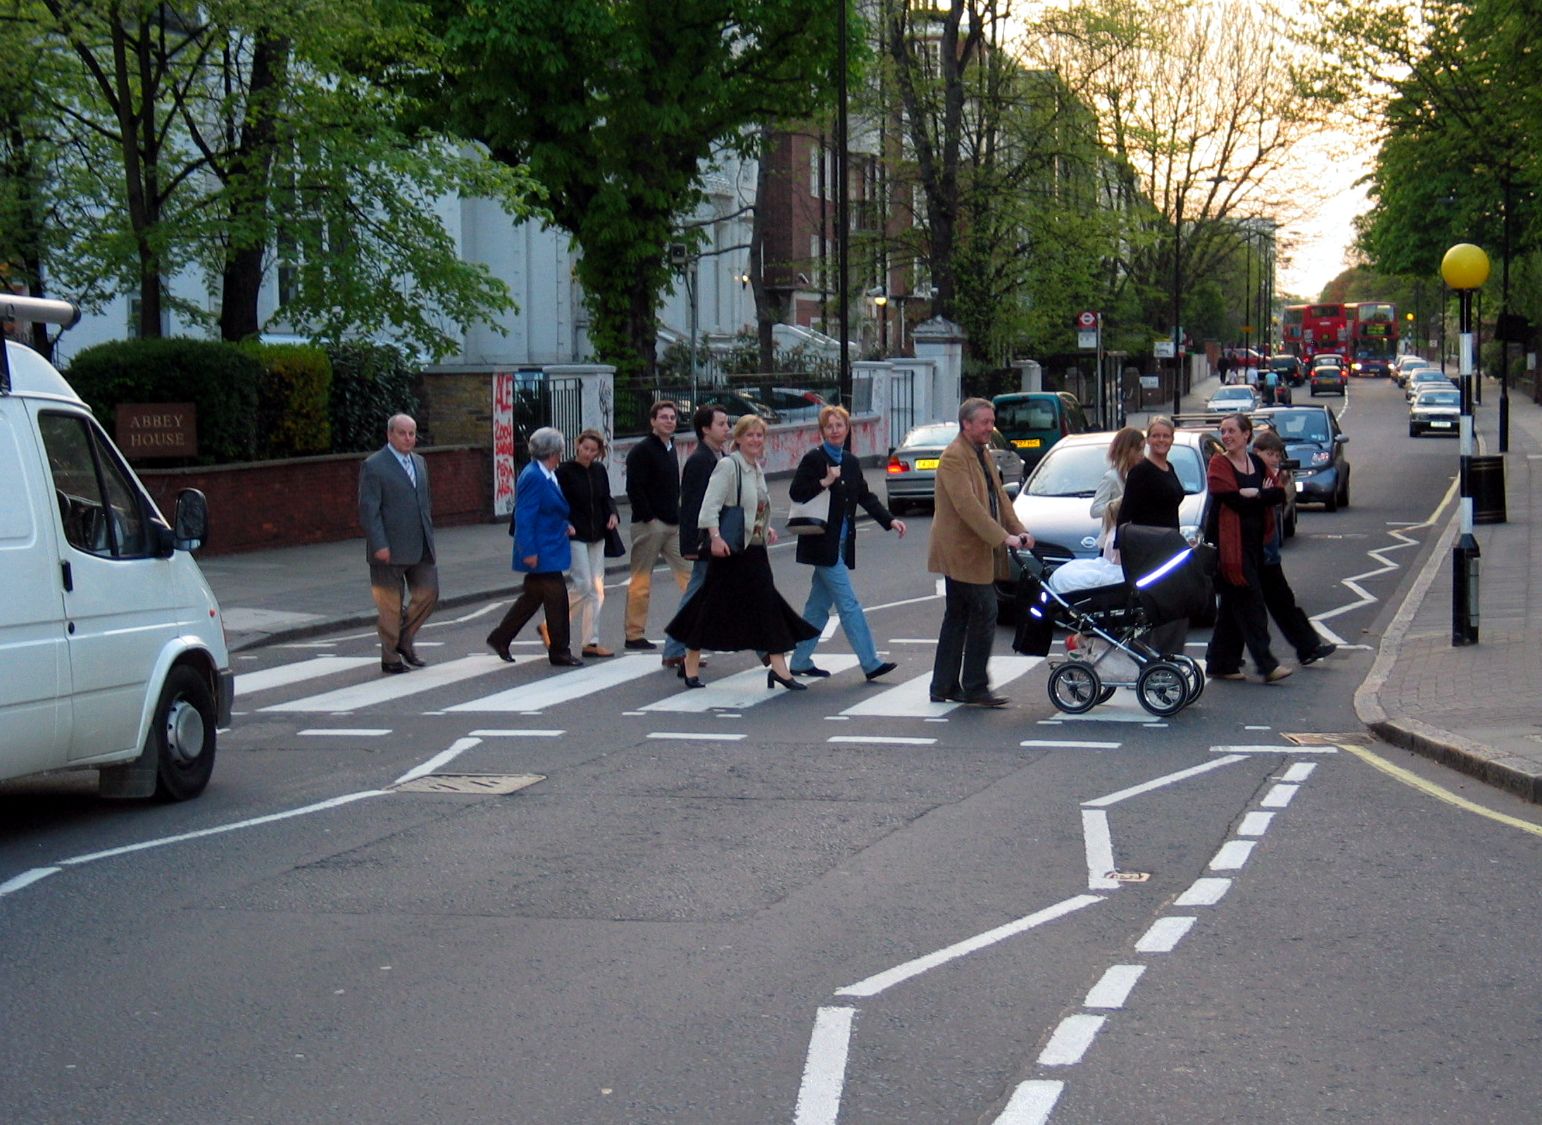 Zebrapad Abbey Road (Londen) in 2004